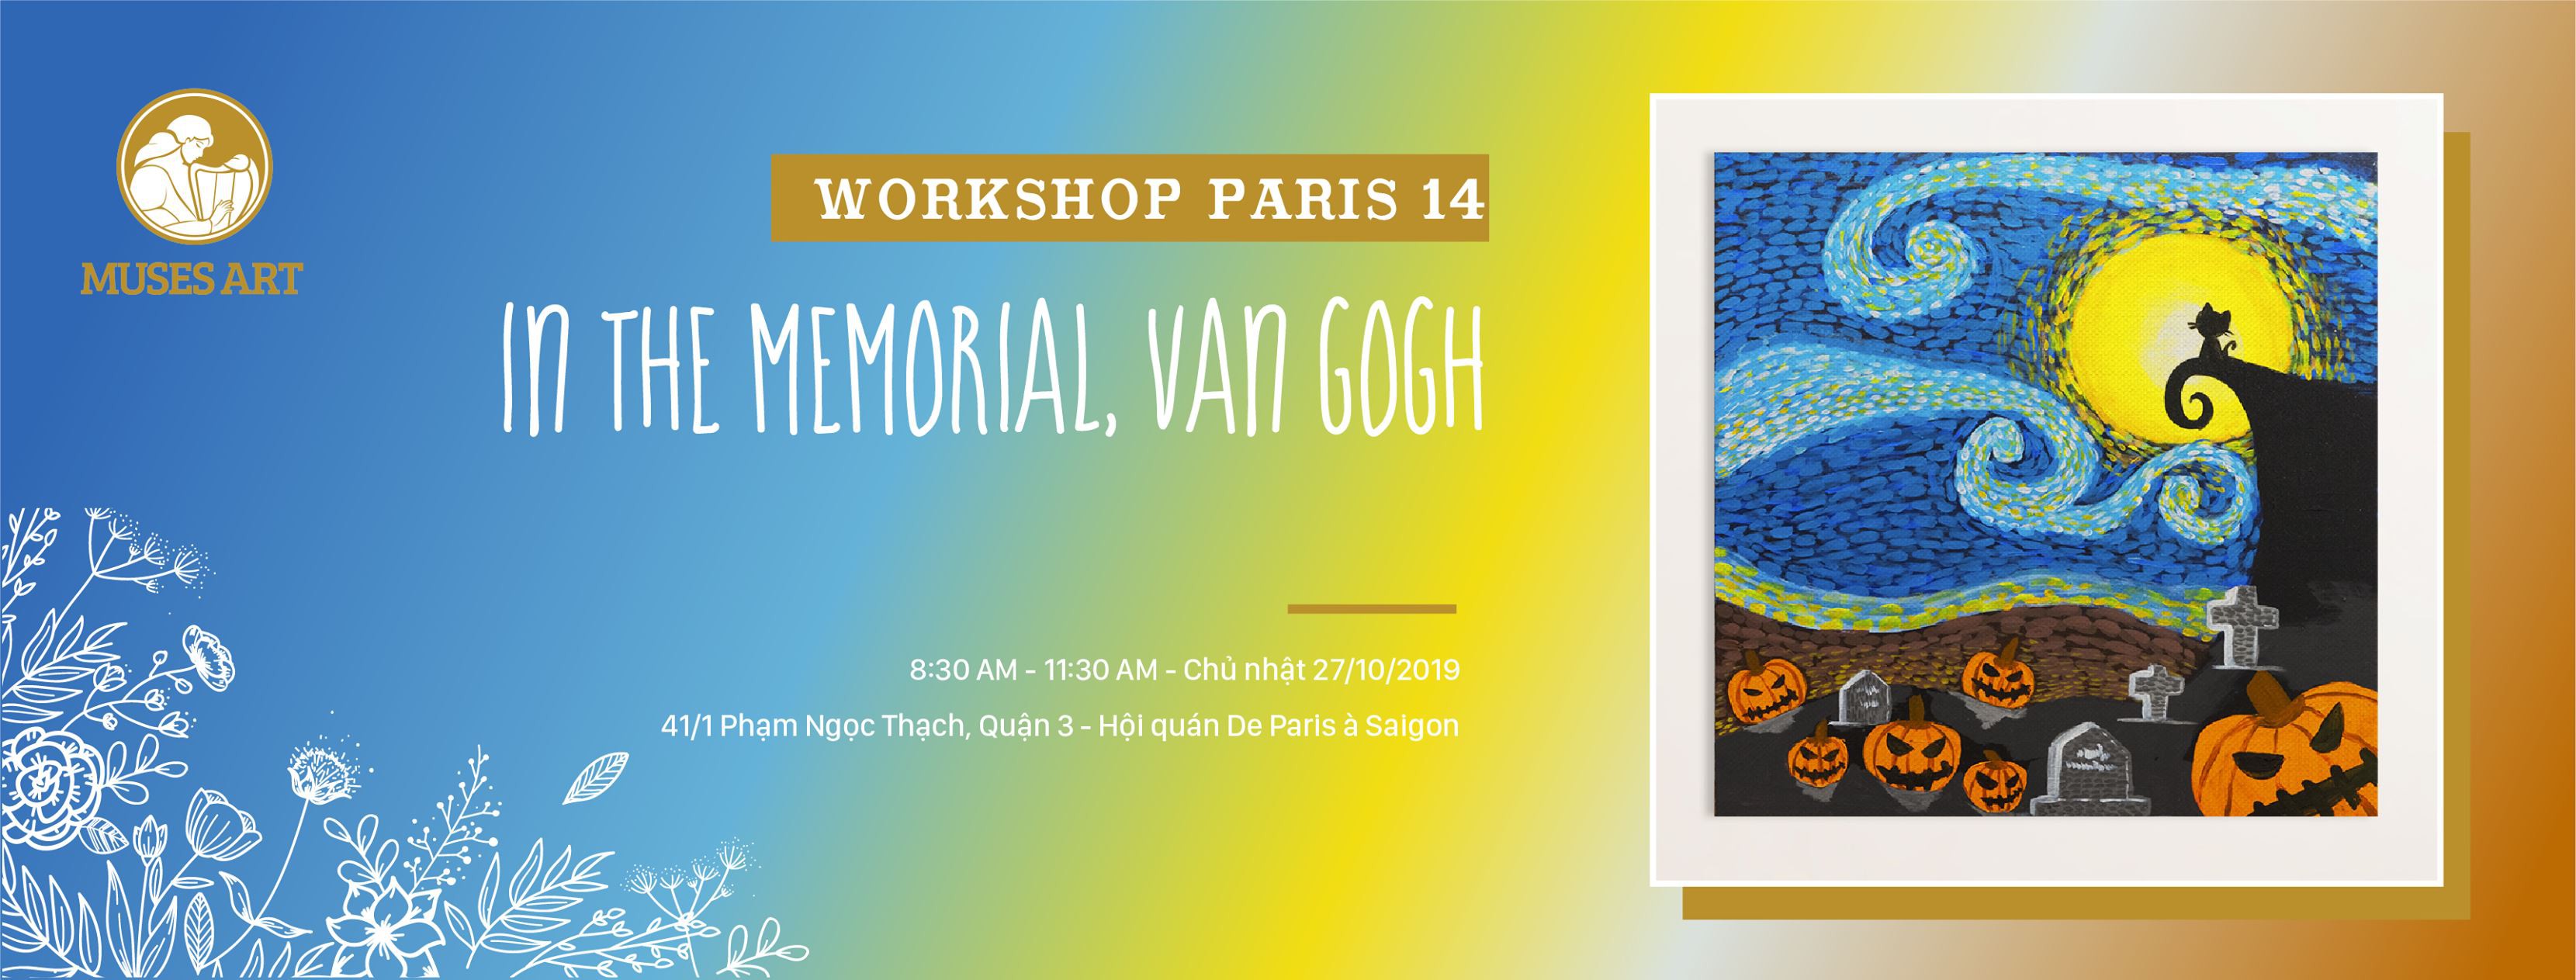 Workshop Paris 14 - Vẽ dành cho người chưa biết vẽ